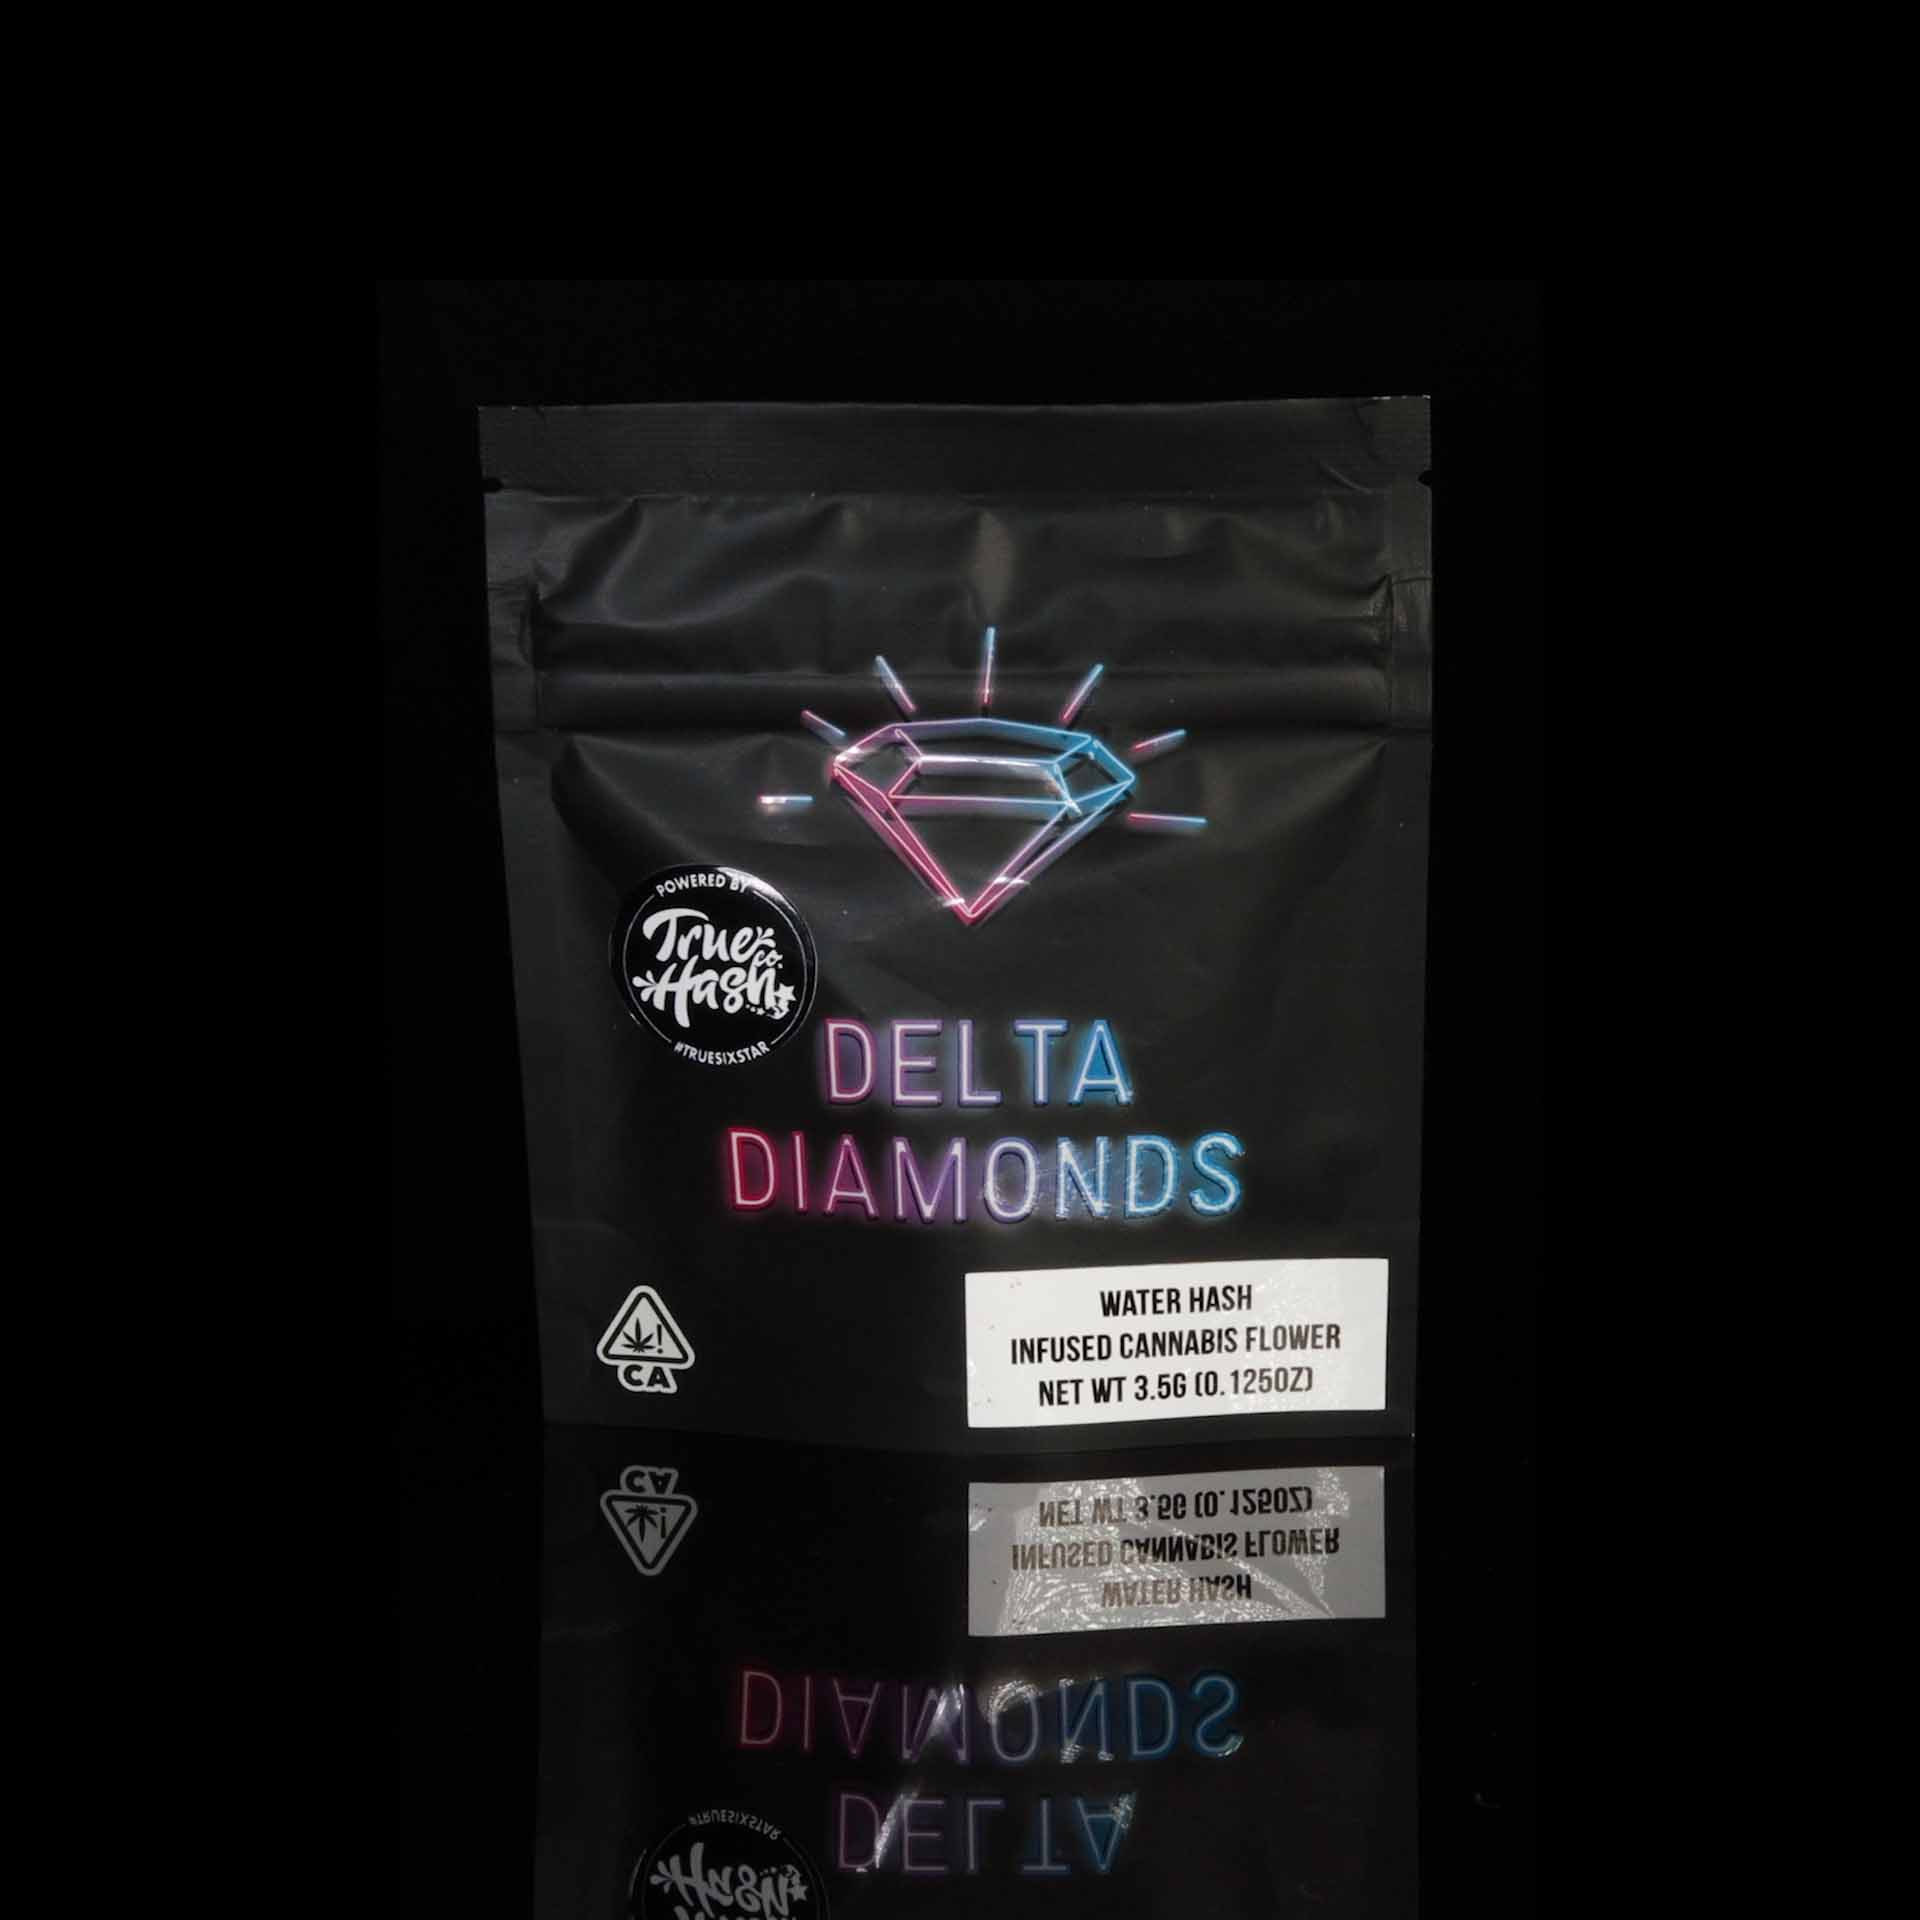 Delta Diamonds by the Delta Boyz iCANNiC and True Hash Co